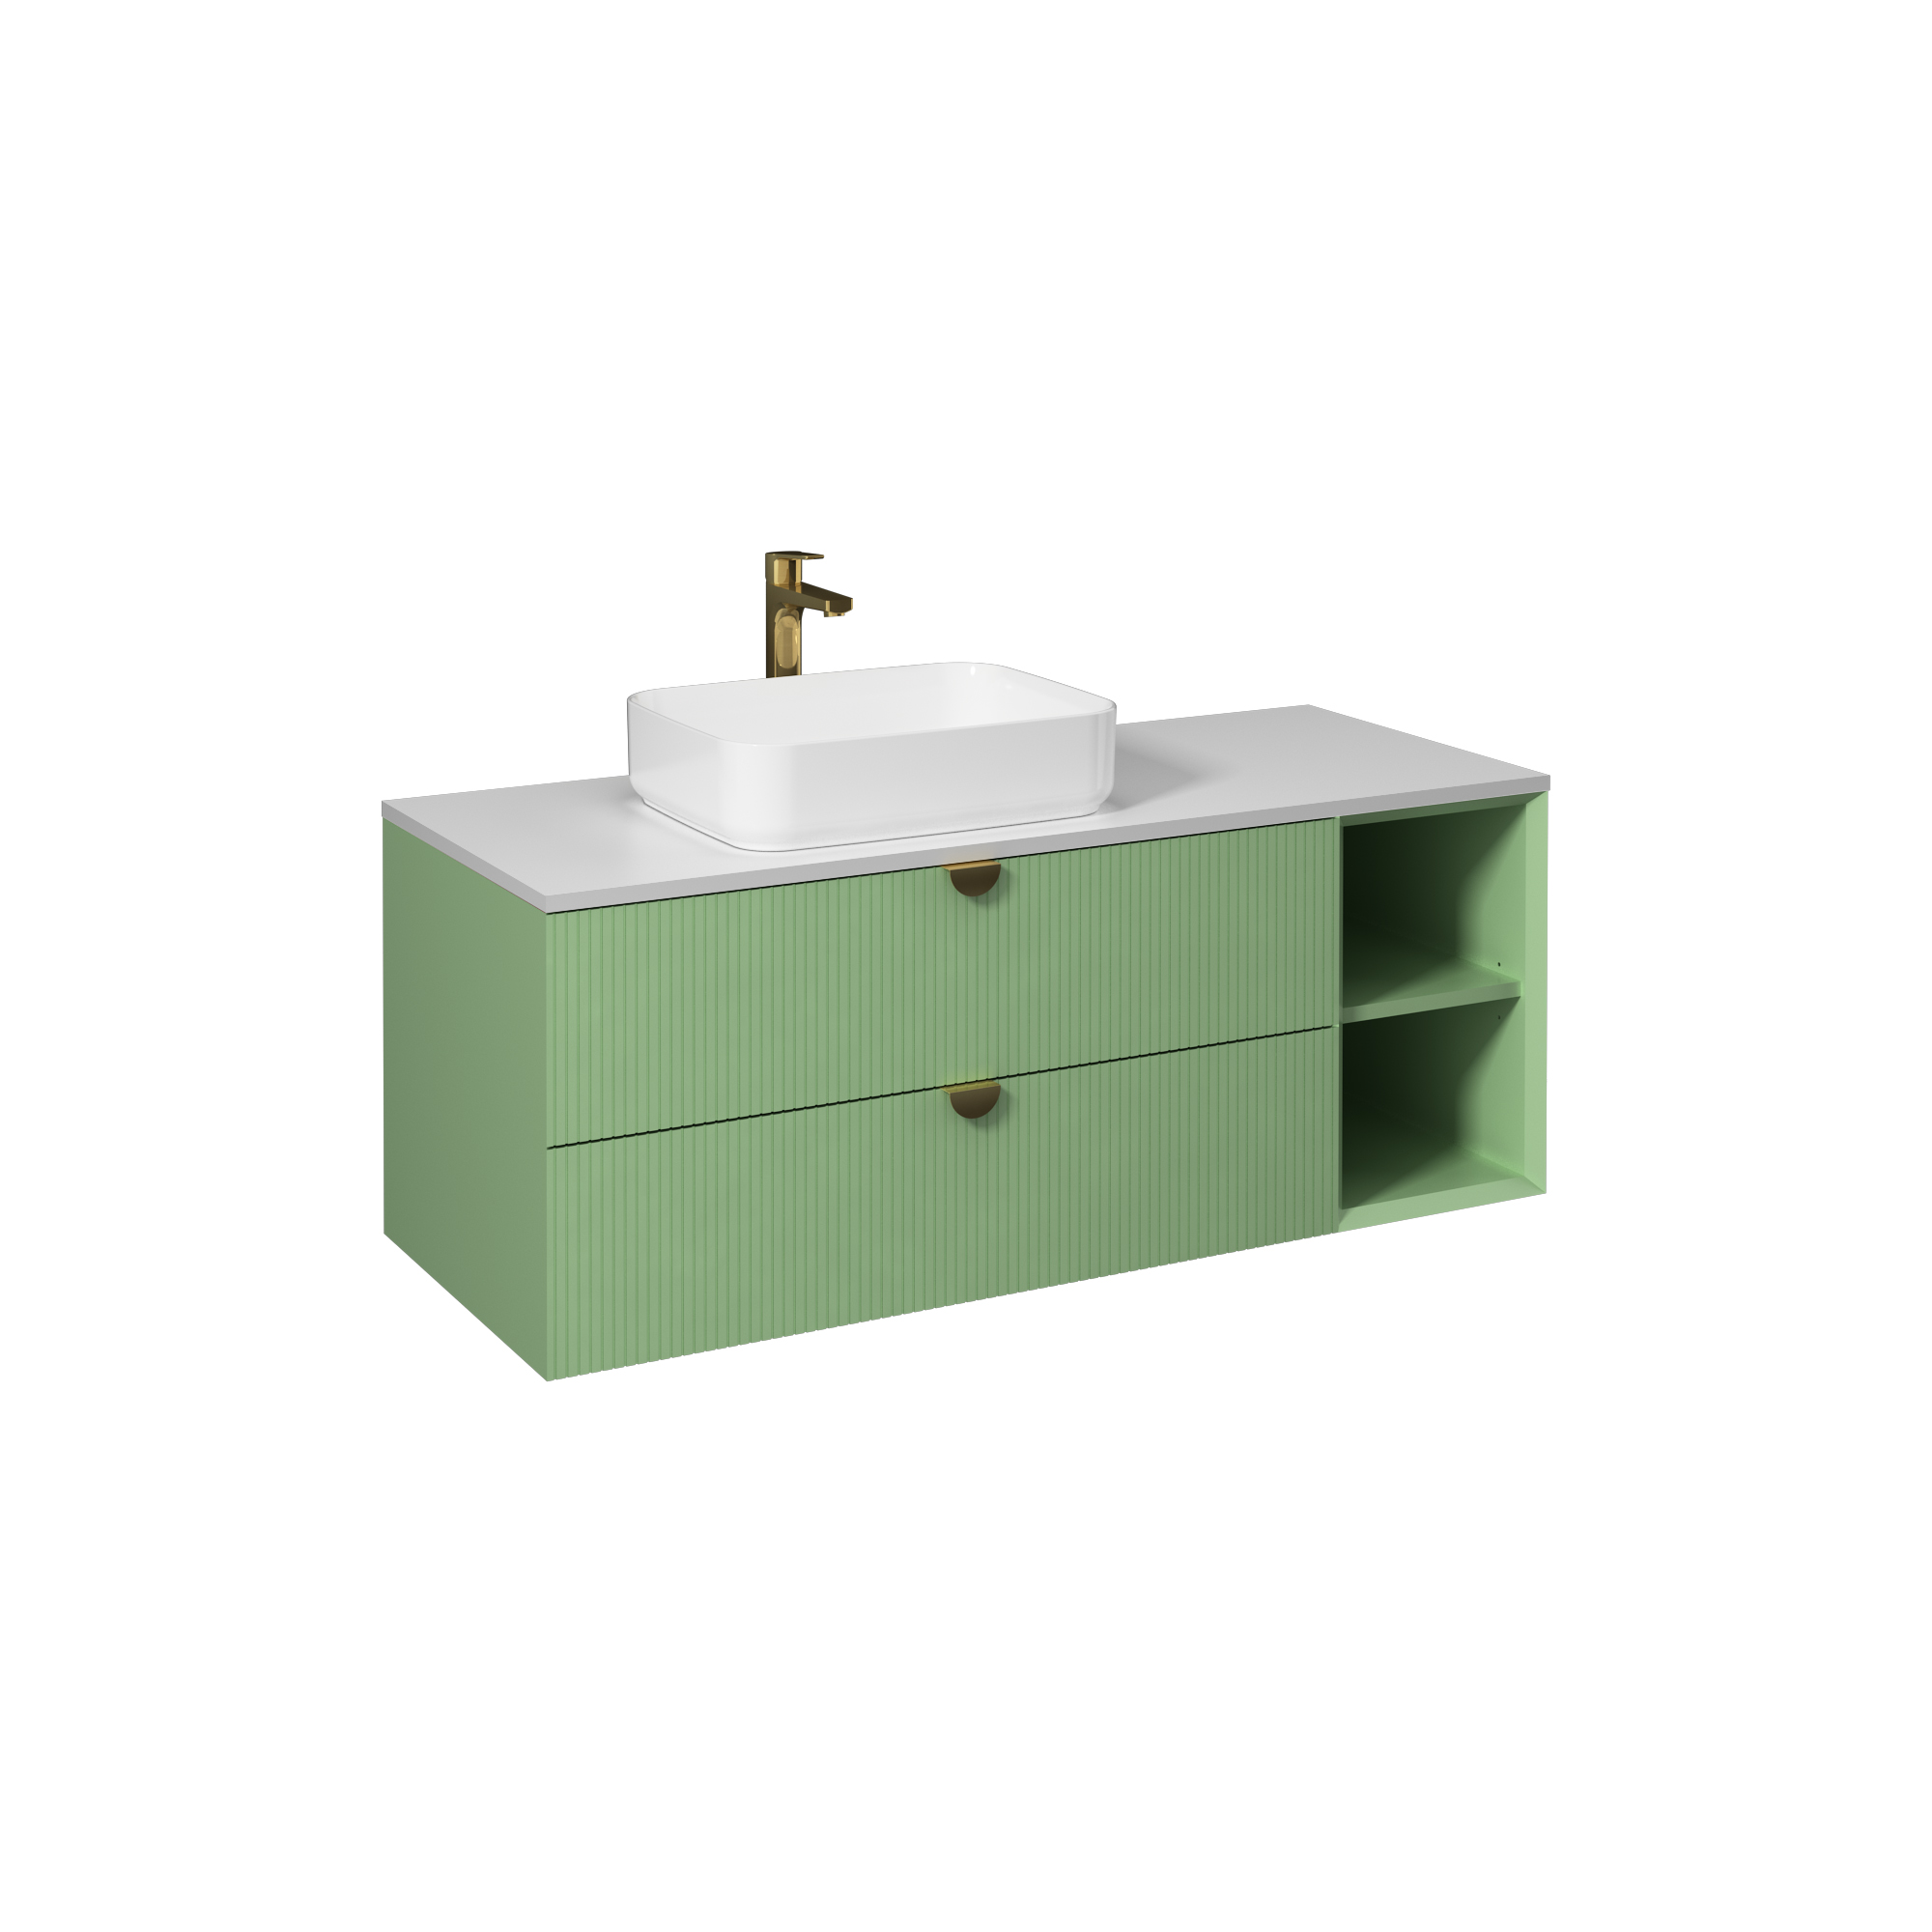 Infinity Washbasin Cabinet, Pastel Green, with White Washbasin 51"